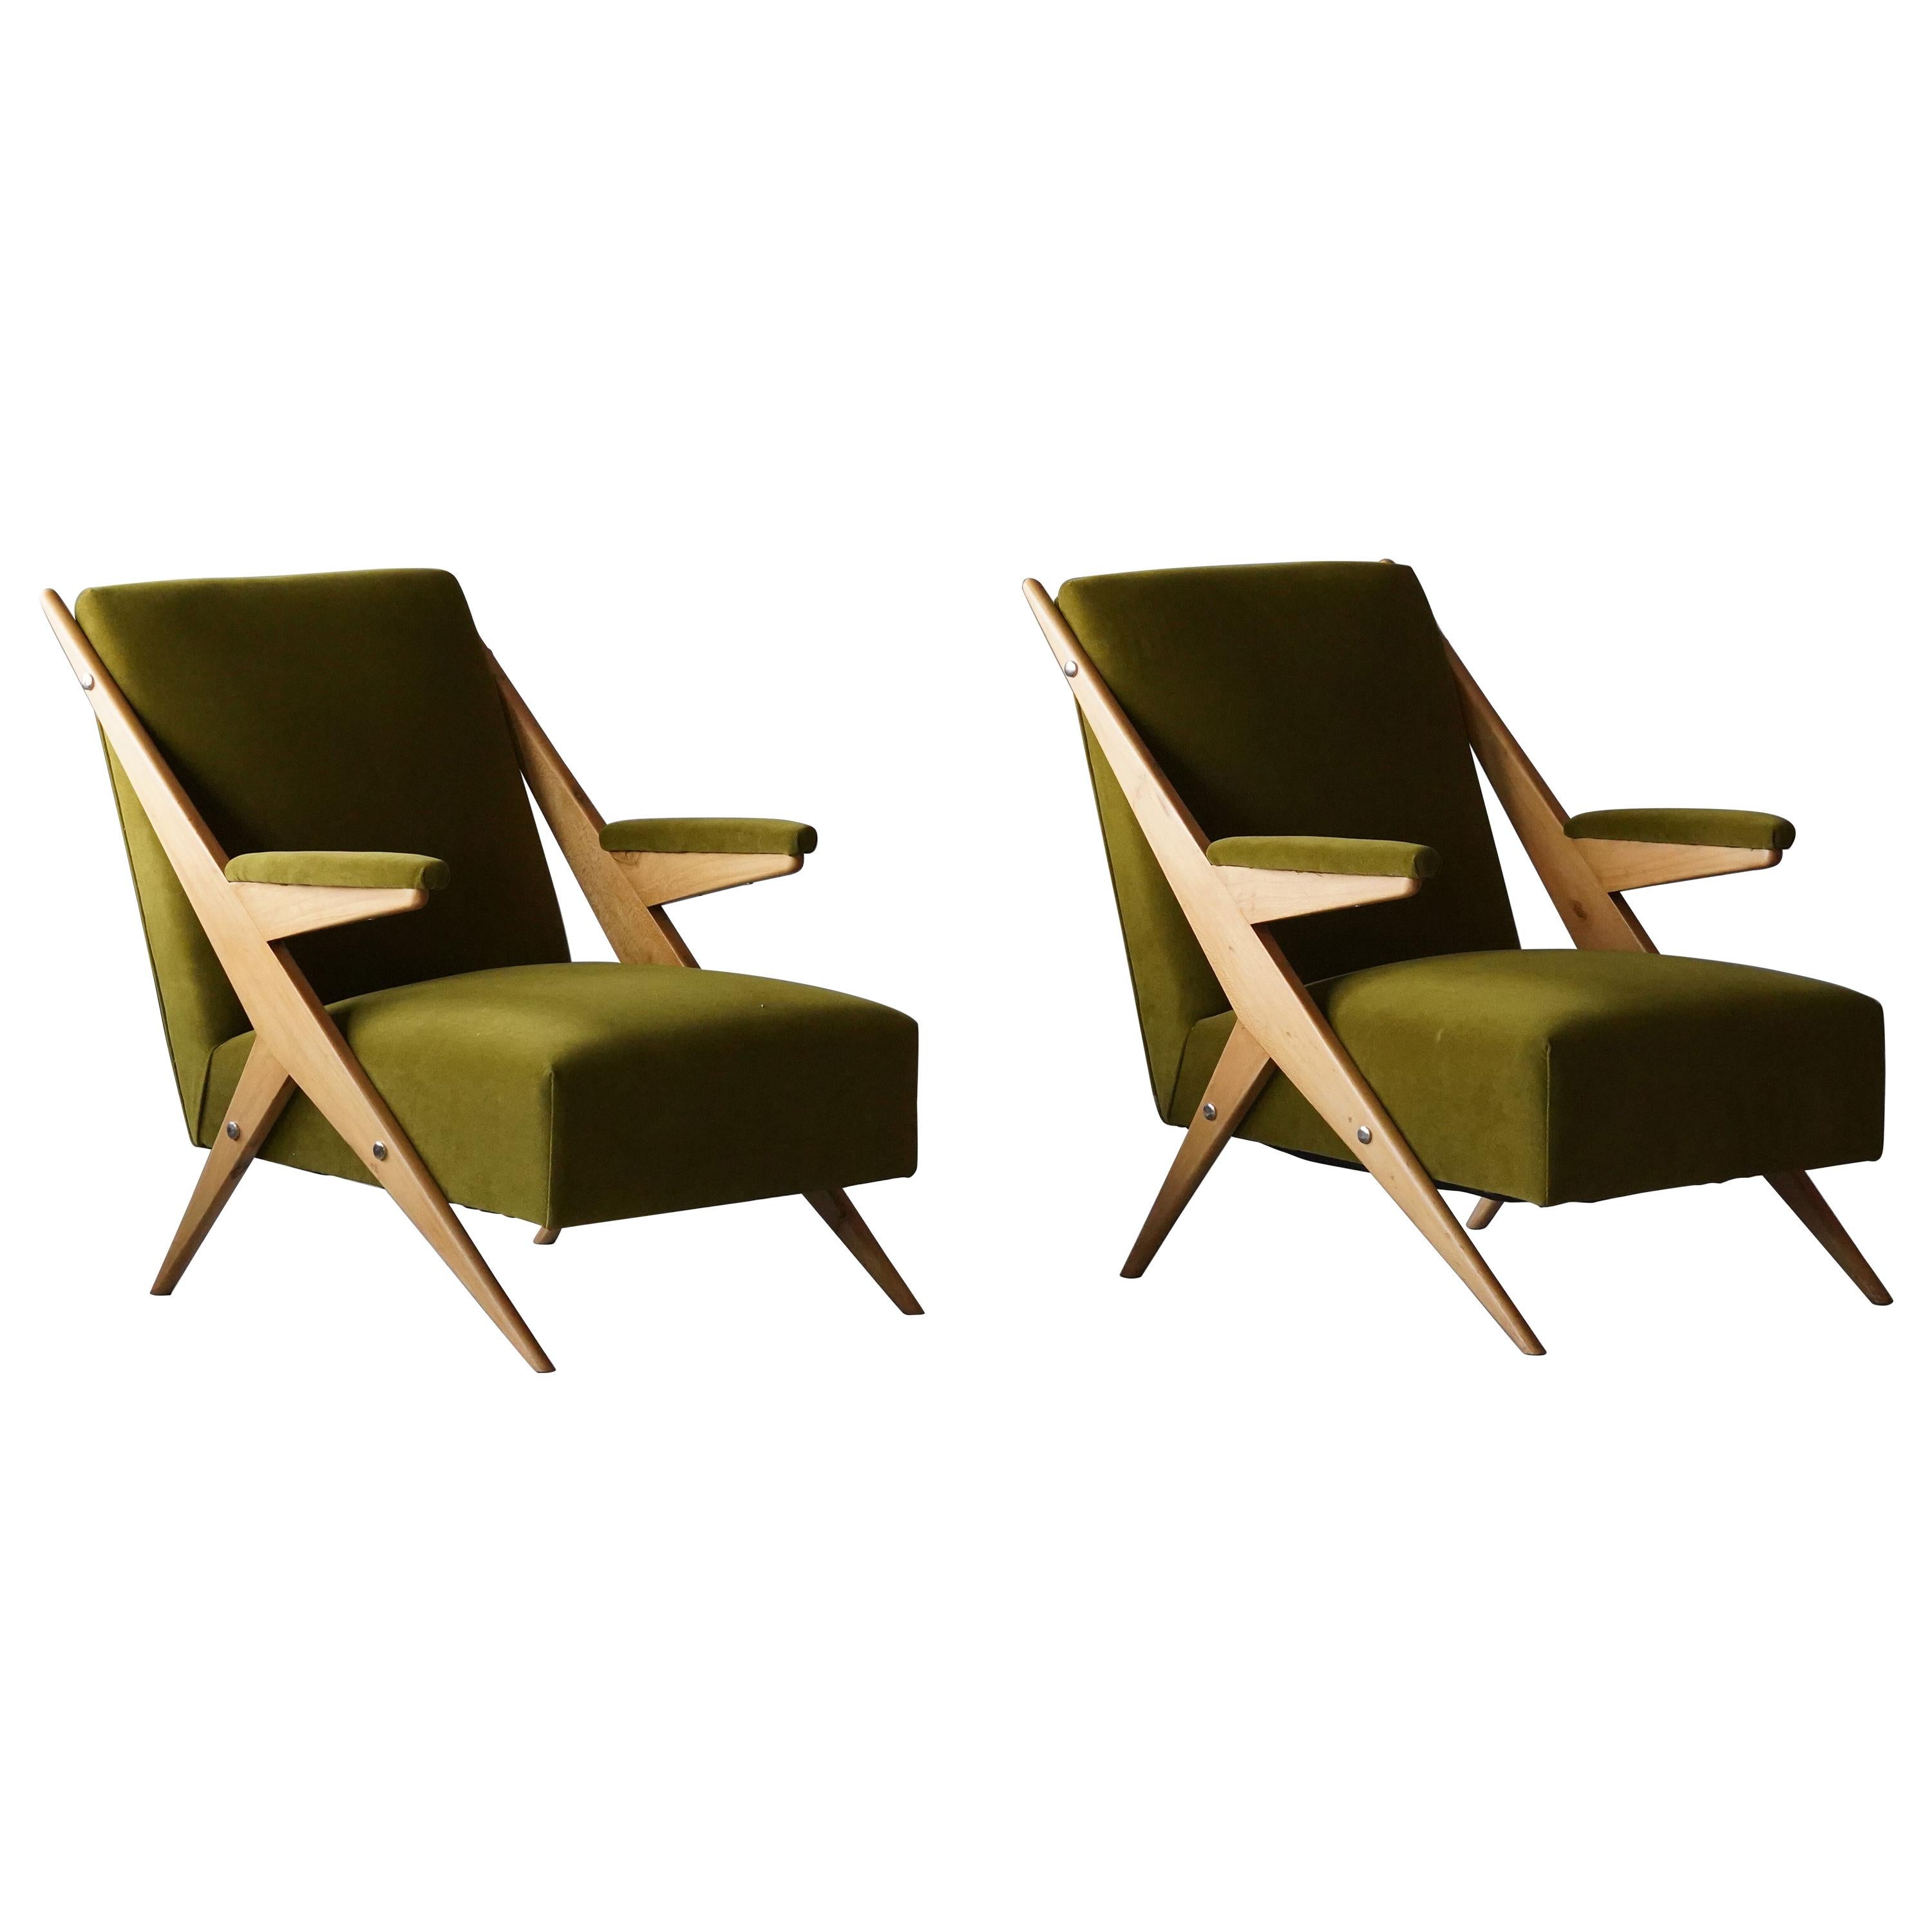 Italian, Modernist Lounge Chairs, Light Wood, Green Velvet, Italy, 1960s